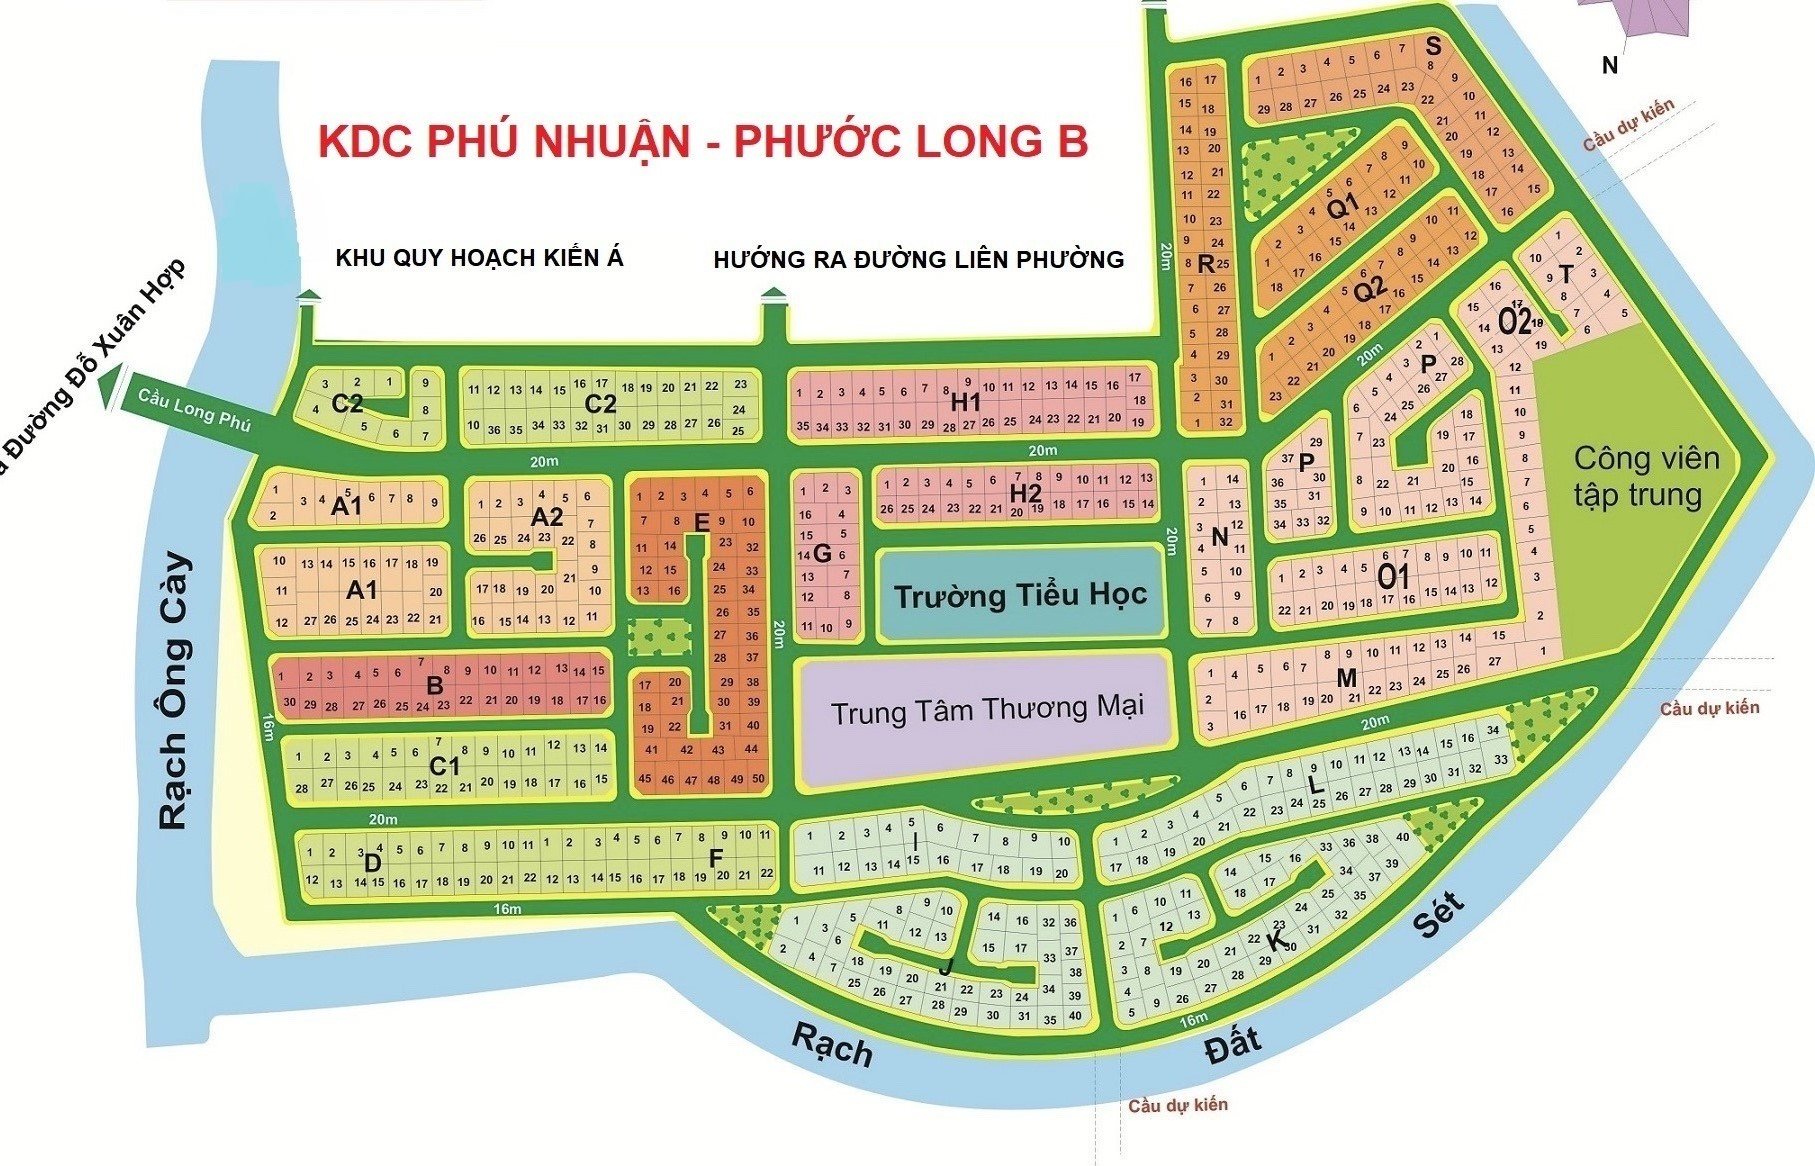 Cho thuê đất dựng nhà xưởng, văn phòng DT 330m2, đường 20m, KDC Phú Nhuận, PLB, TP.Thủ đức 3